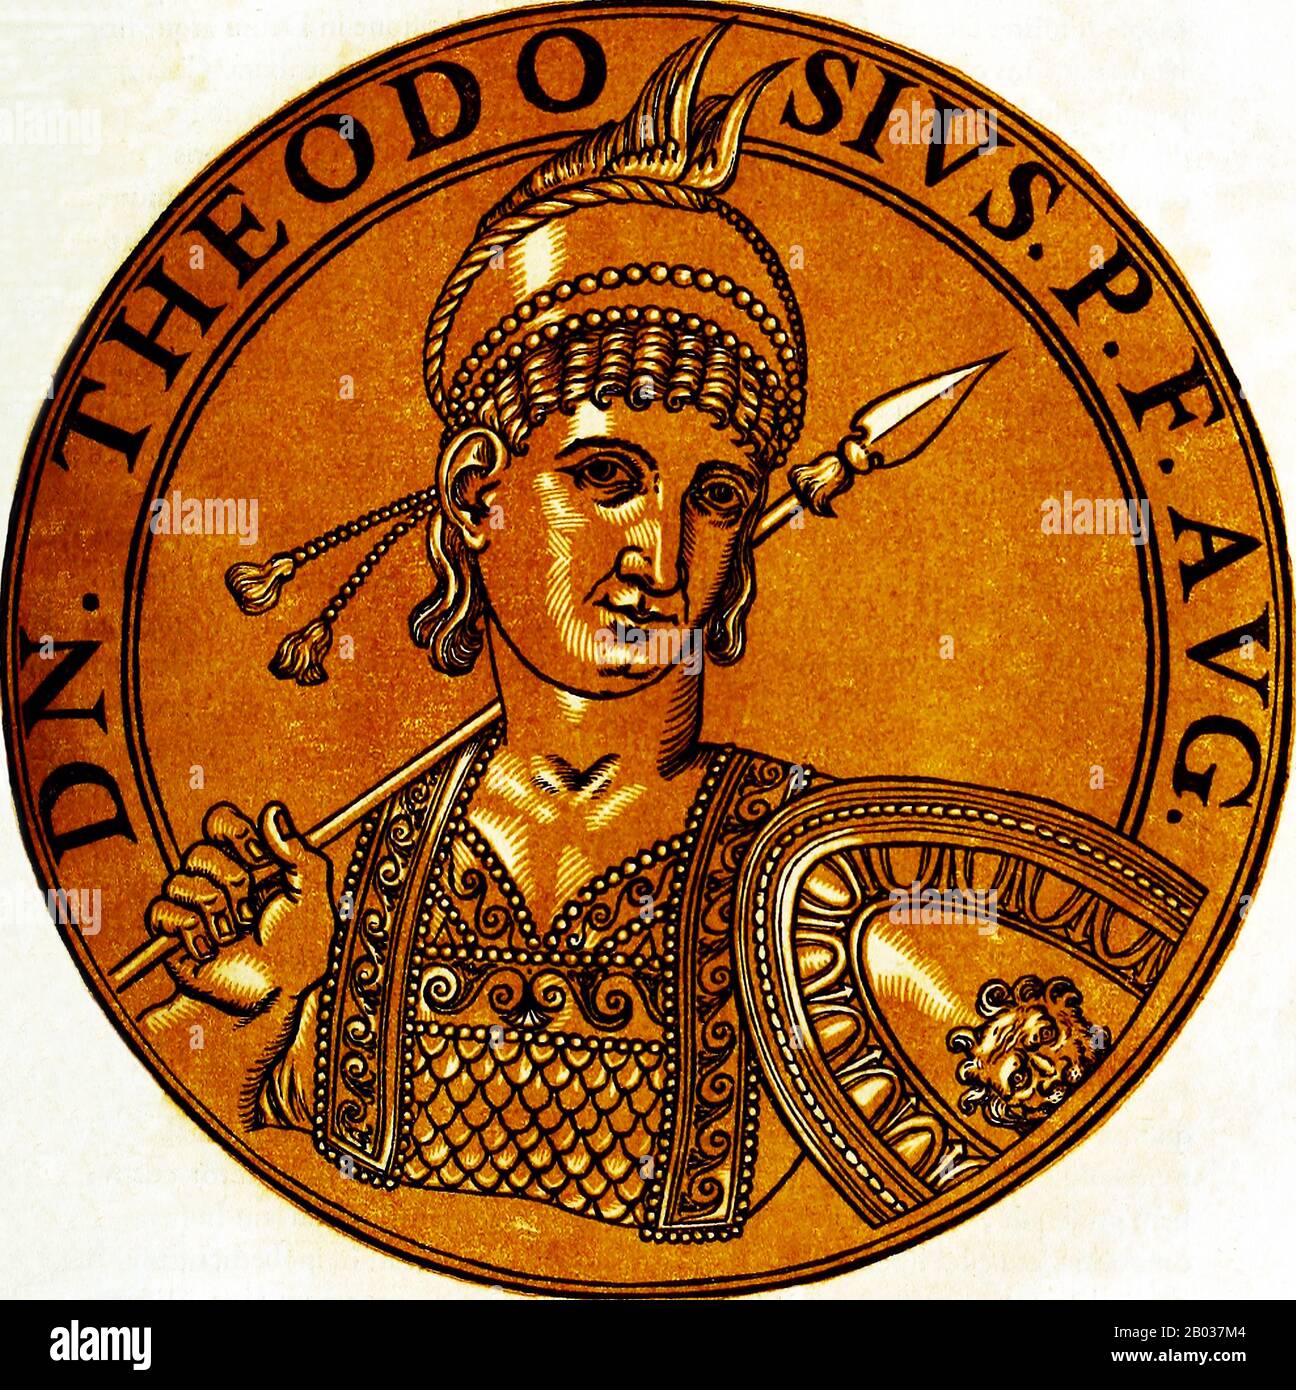 Theodosius III. (-c 754), auch Theodosios III. Genannt, war ein Finanzbeamter und Steuereinlagener im Kaisertum, wobei einige ihn für den Sohn des ehemaligen Kaiser Tiberios III. Beanspruchten Als die Oppsikionstruppen gegen Kaiser Anastasius II. Rebellierten, erklärten sie für Theodosius, eine Wahl, die er nicht ohne weiteres akzeptierte. Einer Geschichte zufolge versuchte er sogar, sich in den Wäldern in der Nähe von Adramyttium zu verstecken, bevor er 715 Kaiser fand und bejubelte. Theodosius und seine Truppen belagerten nach Konstantin und gewannen sechs Monate später den Einzug in die Hauptstadt. Gegenüber seinem Vorgänger war er bemerkenswert gemäßigt Stockfoto